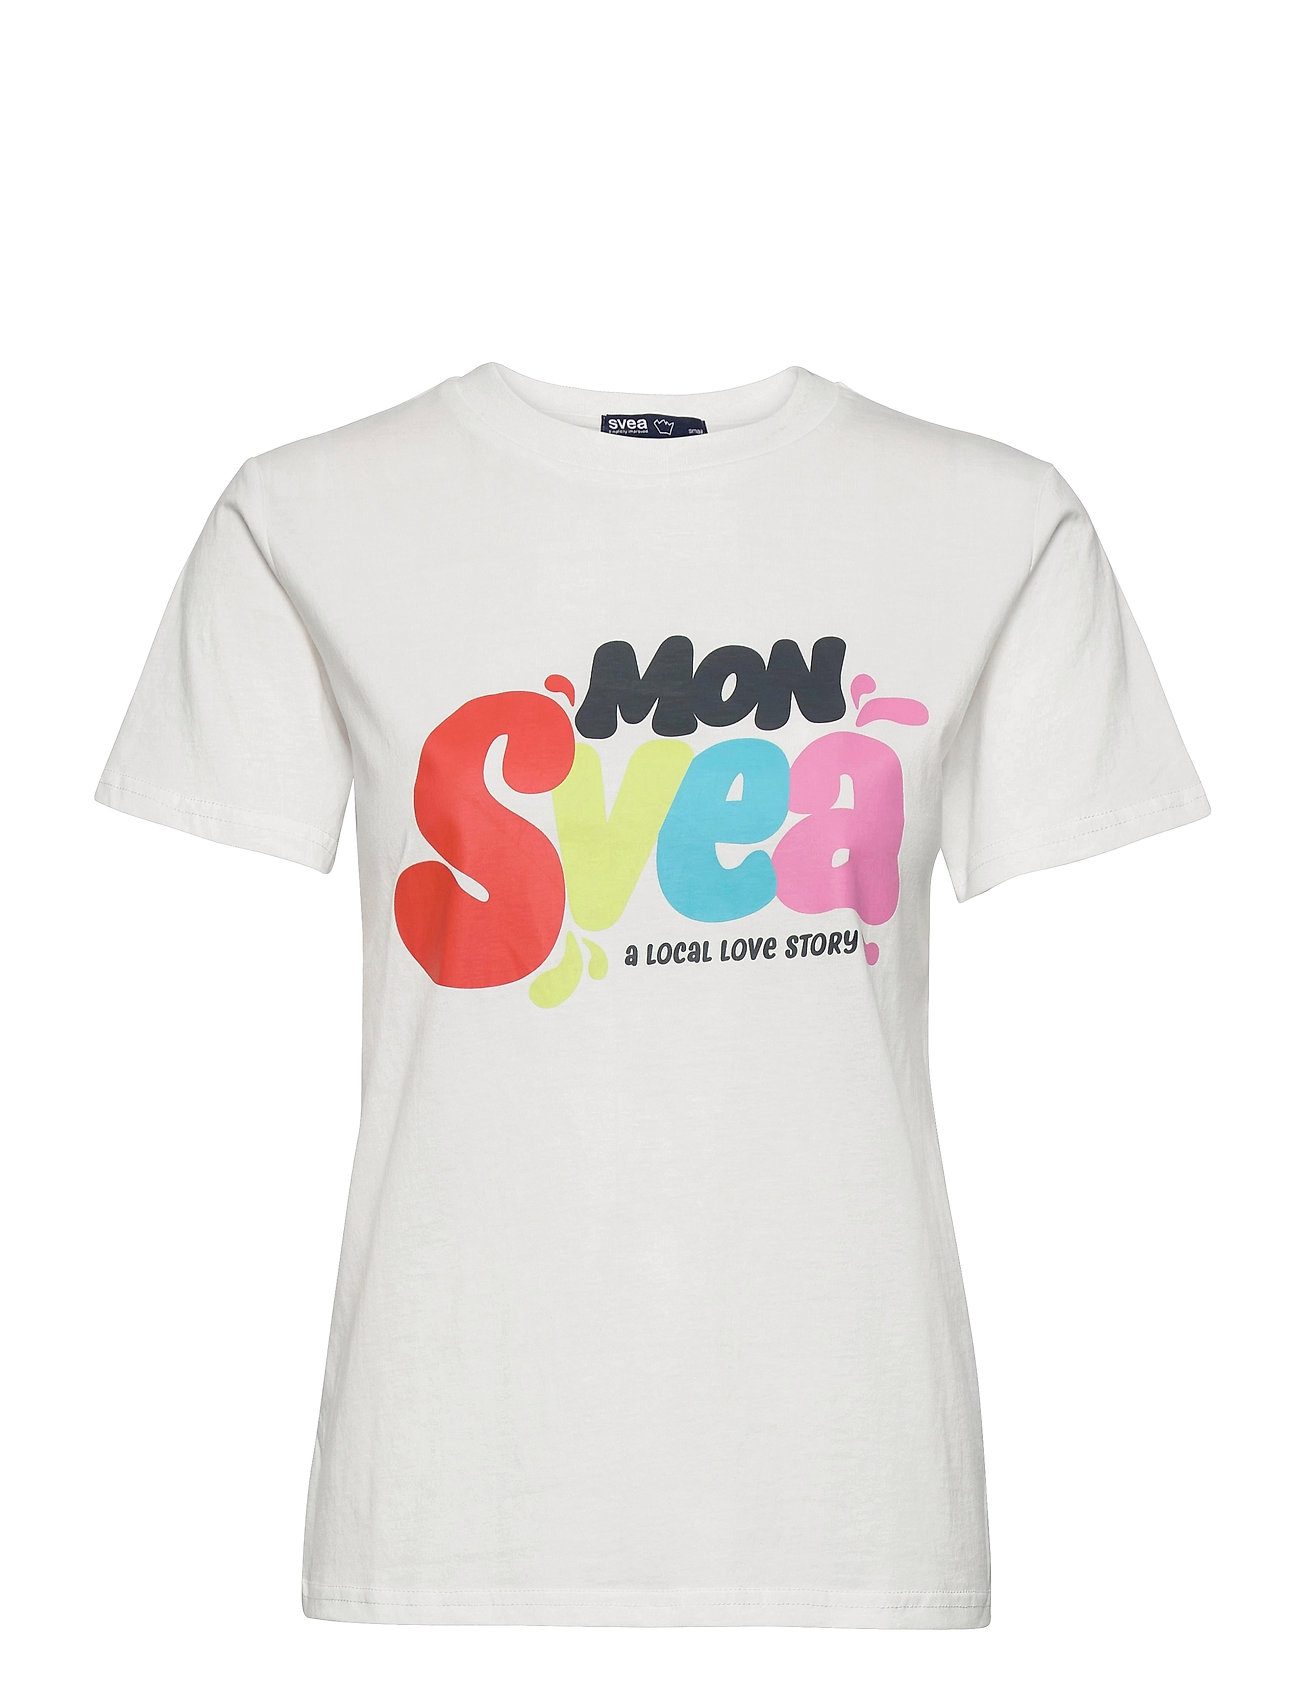 W. Mon Svea Tee T-shirts & Tops Short-sleeved Valkoinen Svea